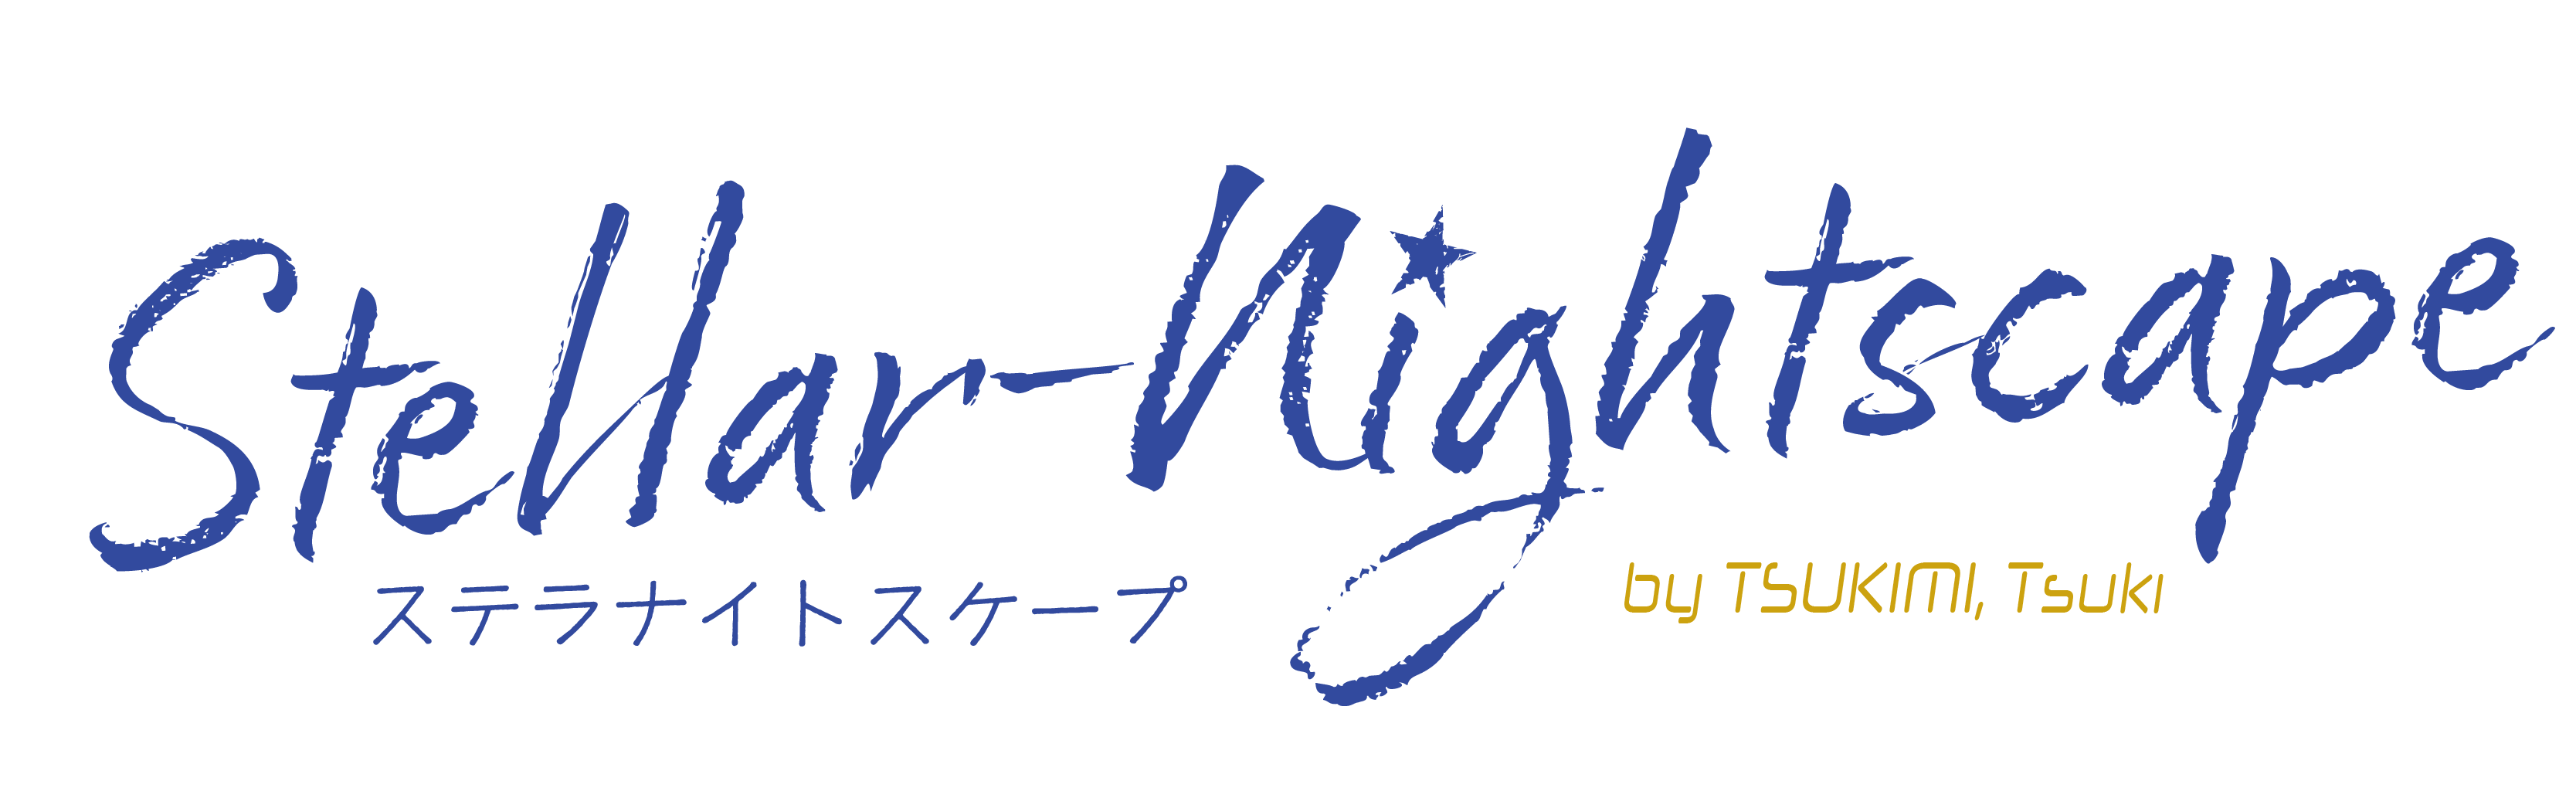 Stellar-Nightscape